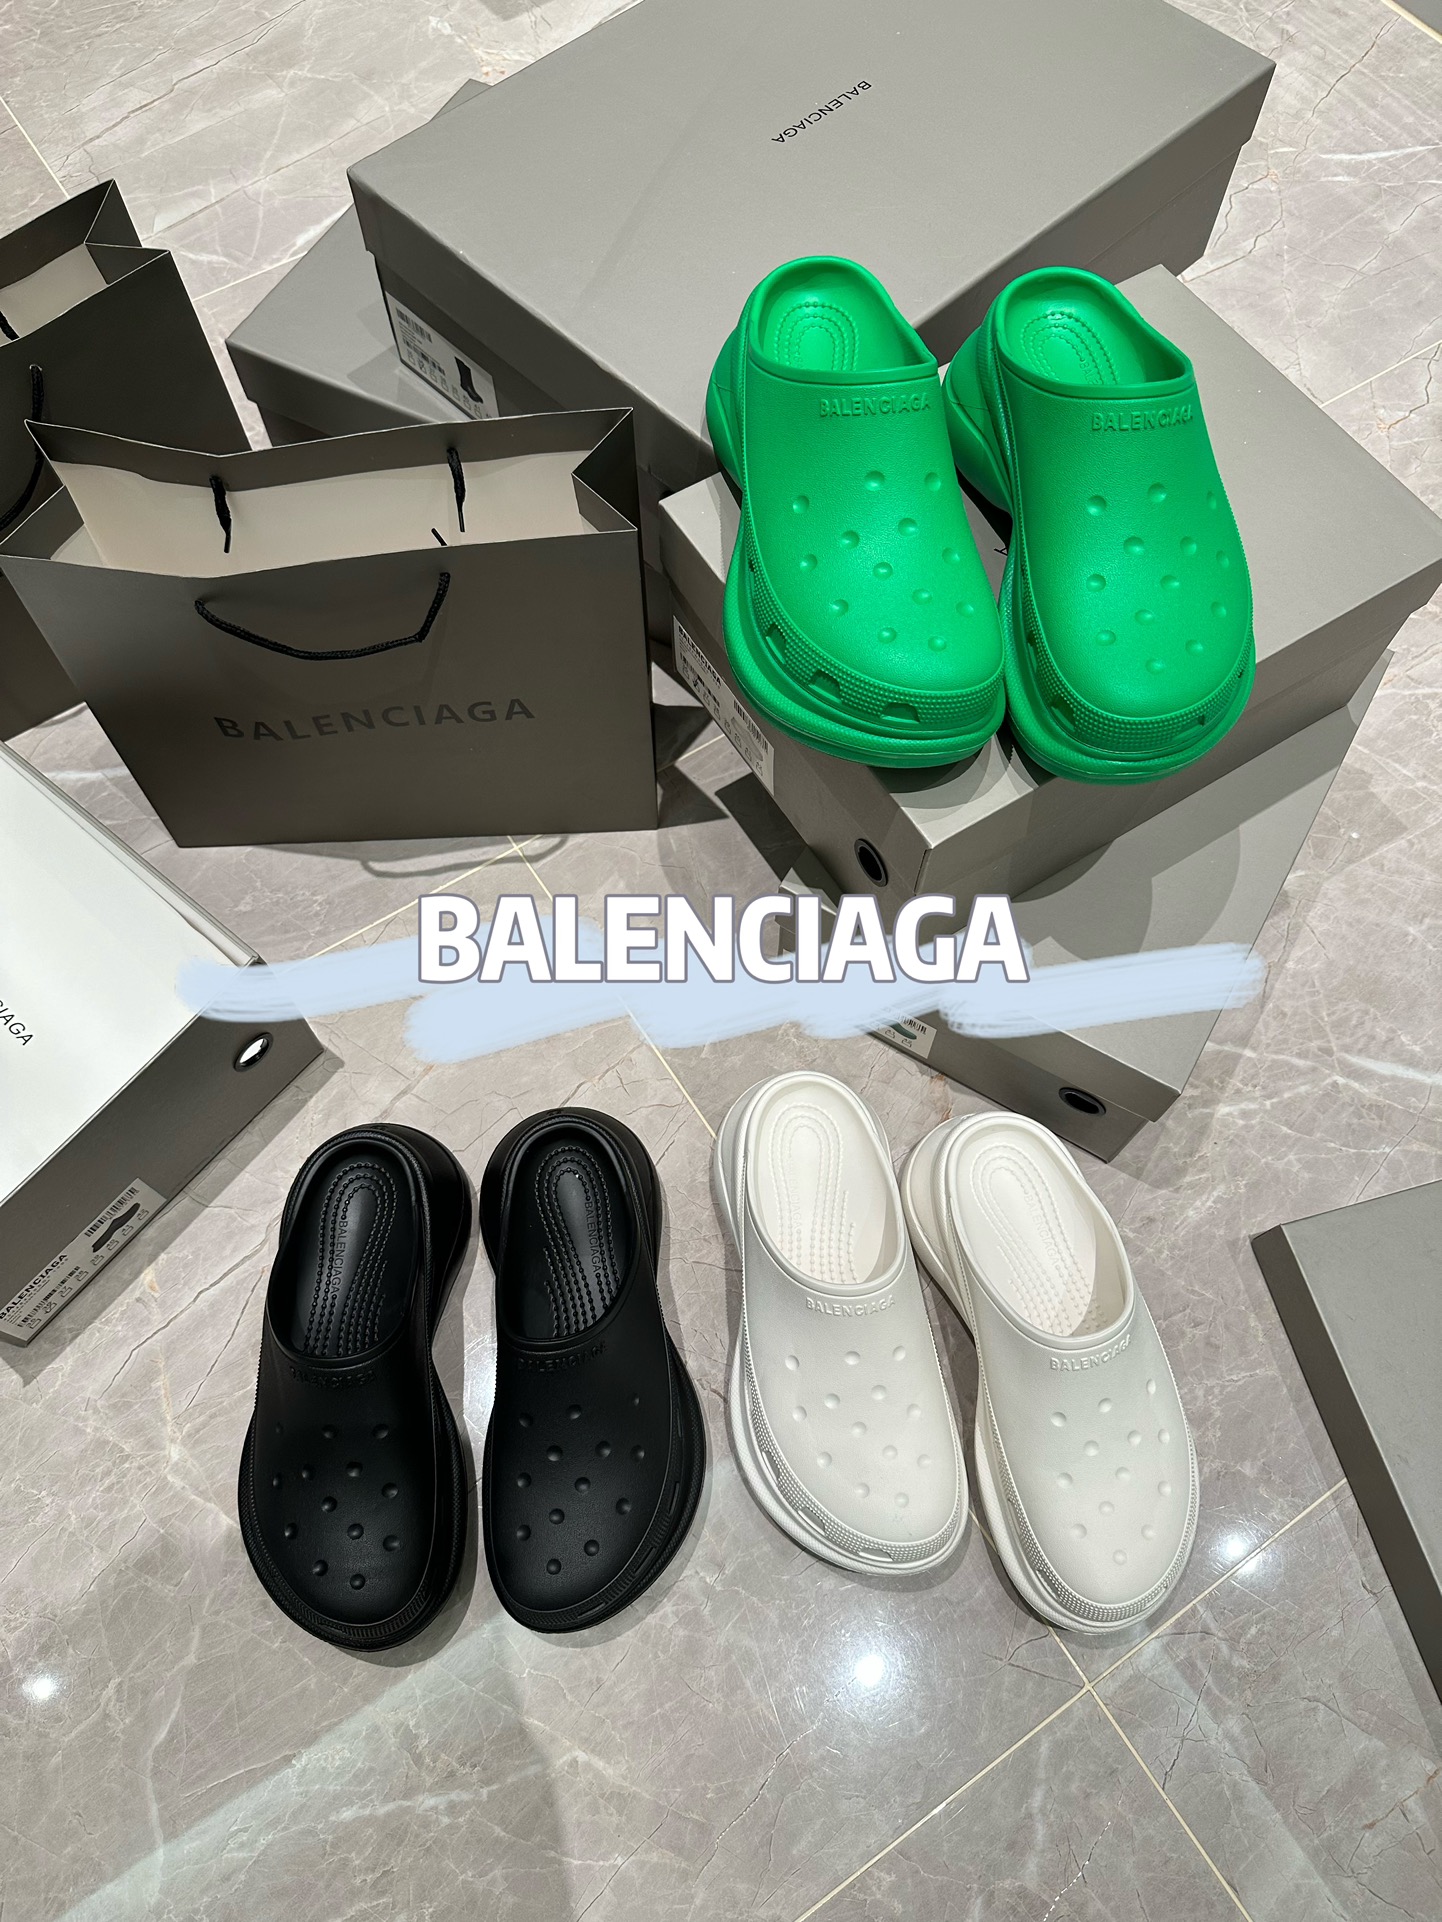 Balenciaga rubber slippers